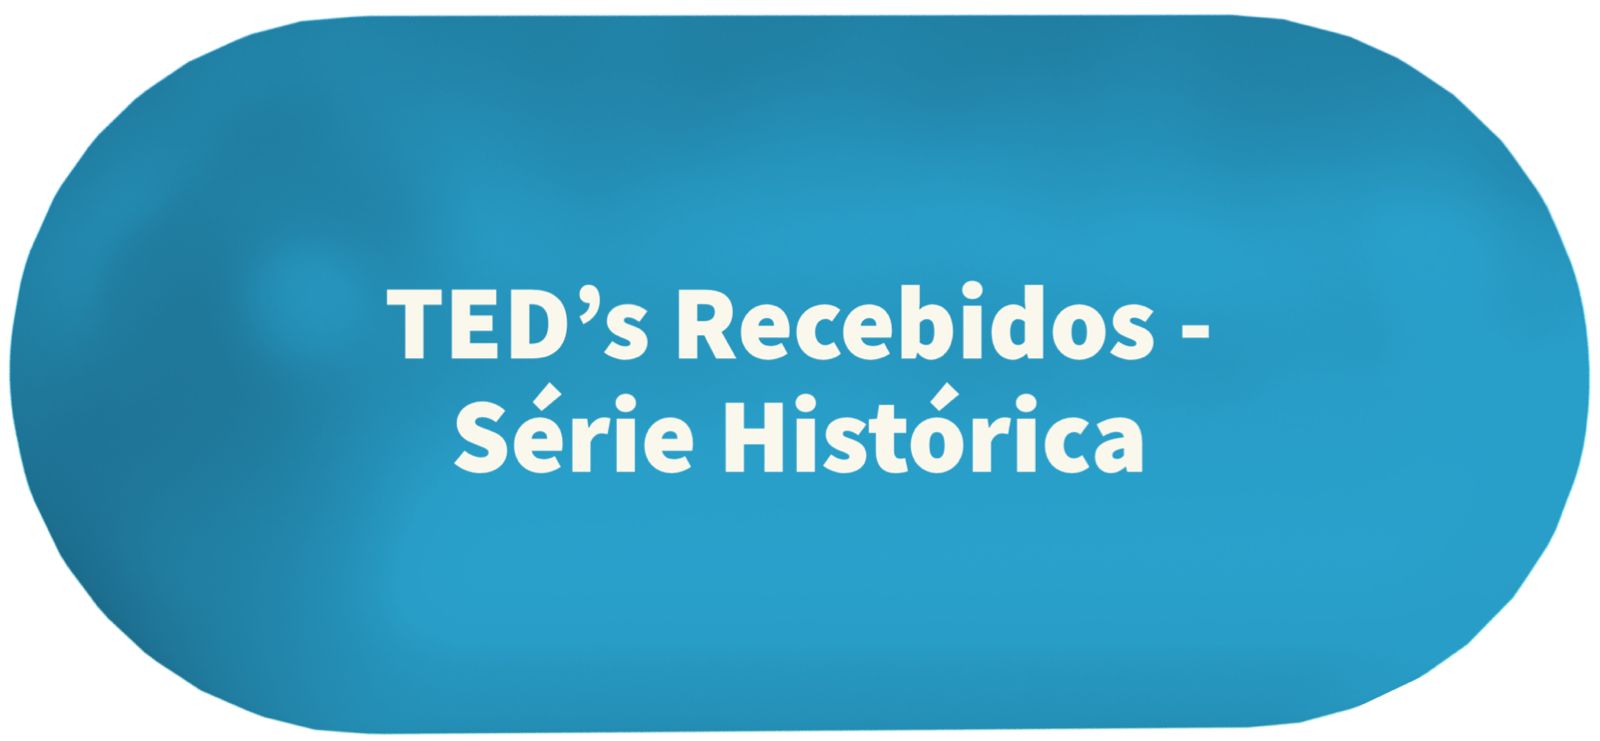 TEDS RECEBIDOS